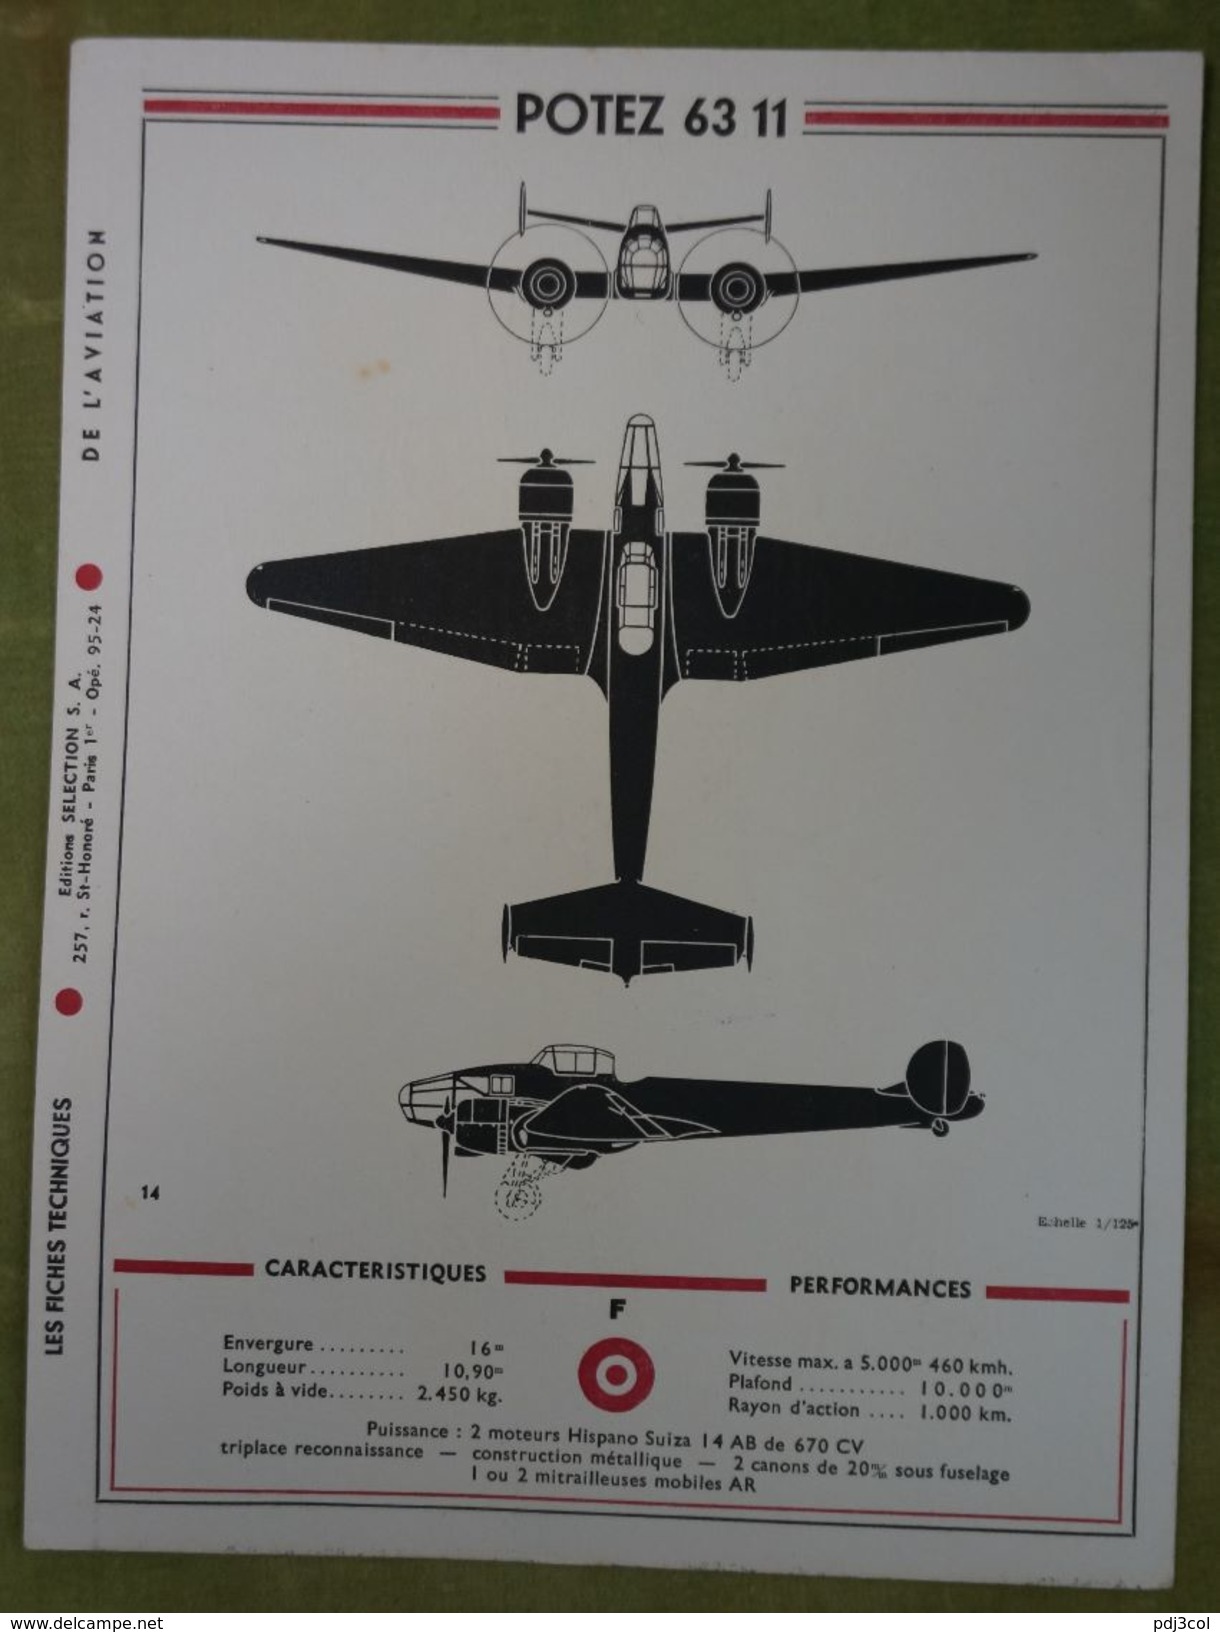 Rare et bel ensemble de 24 planches "Les fiches techniques de l'aviation" illustrées par Lucien CAVE